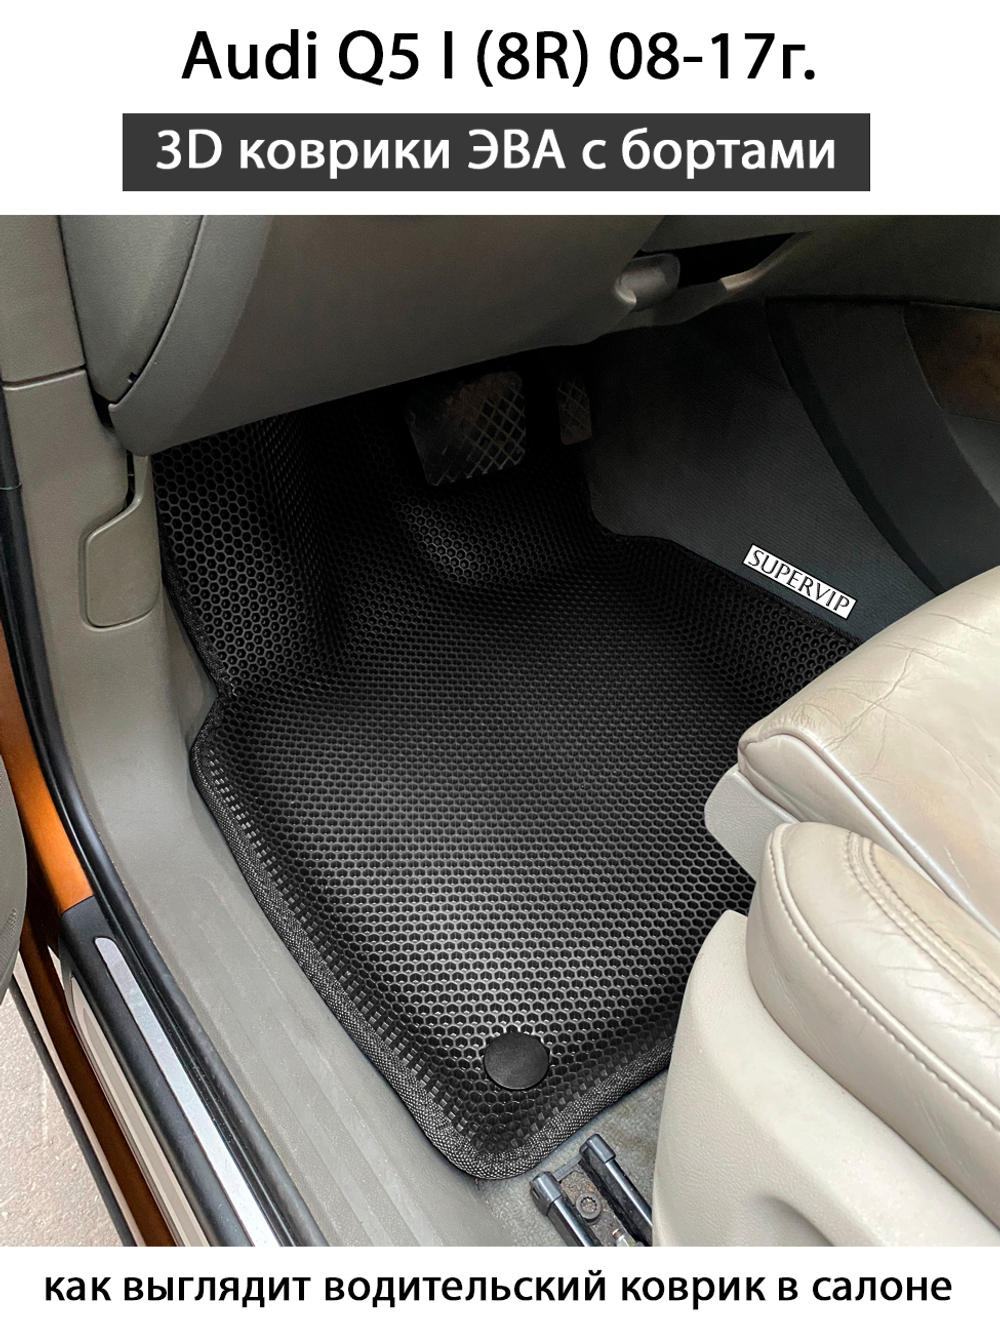 передние эва коврики в салон авто для Ауди q5 I (8R) от supervip